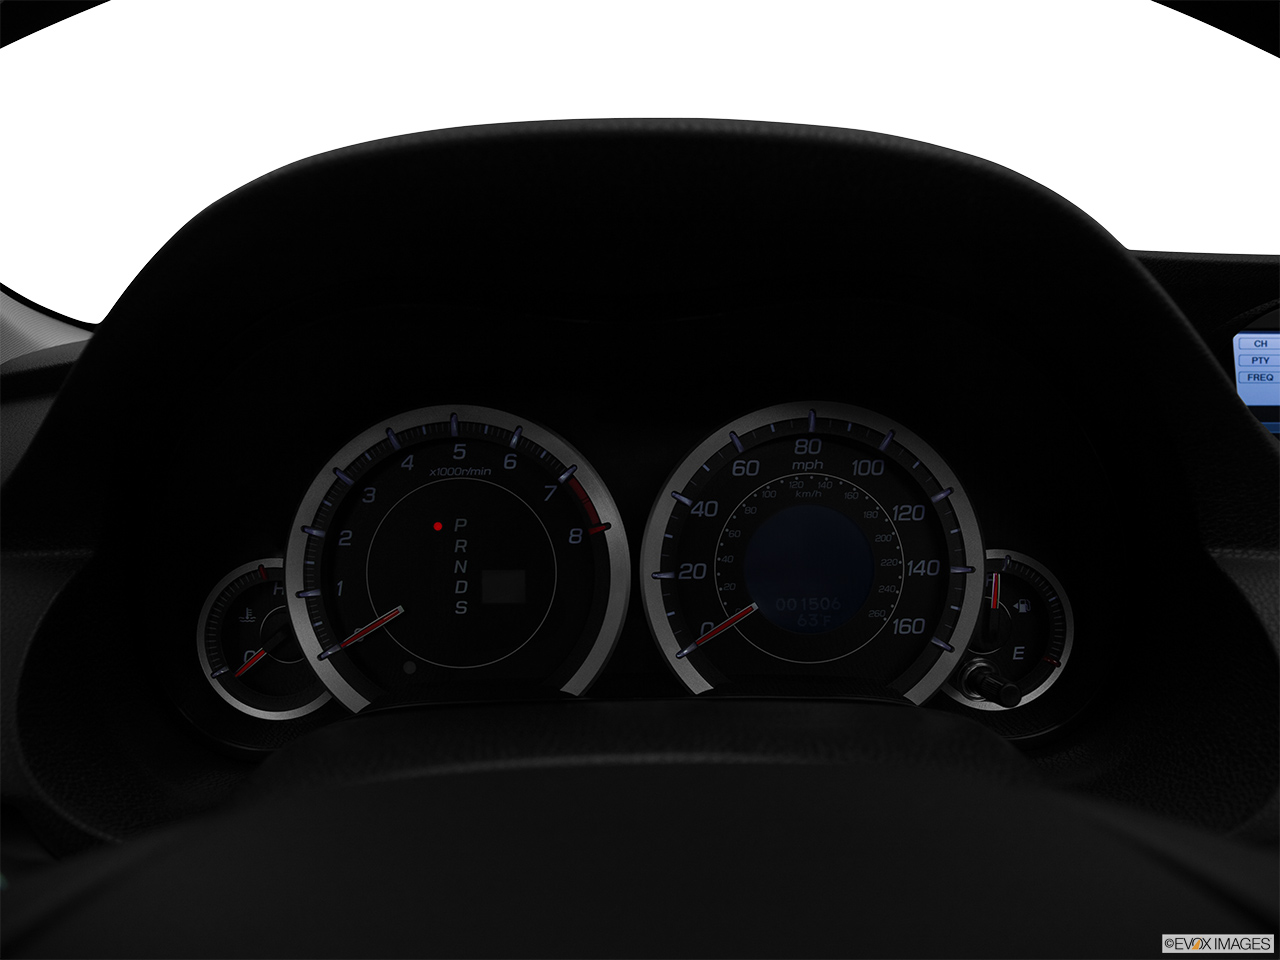 2011 Acura TSX Sport Wagon Speedometer/tachometer. 